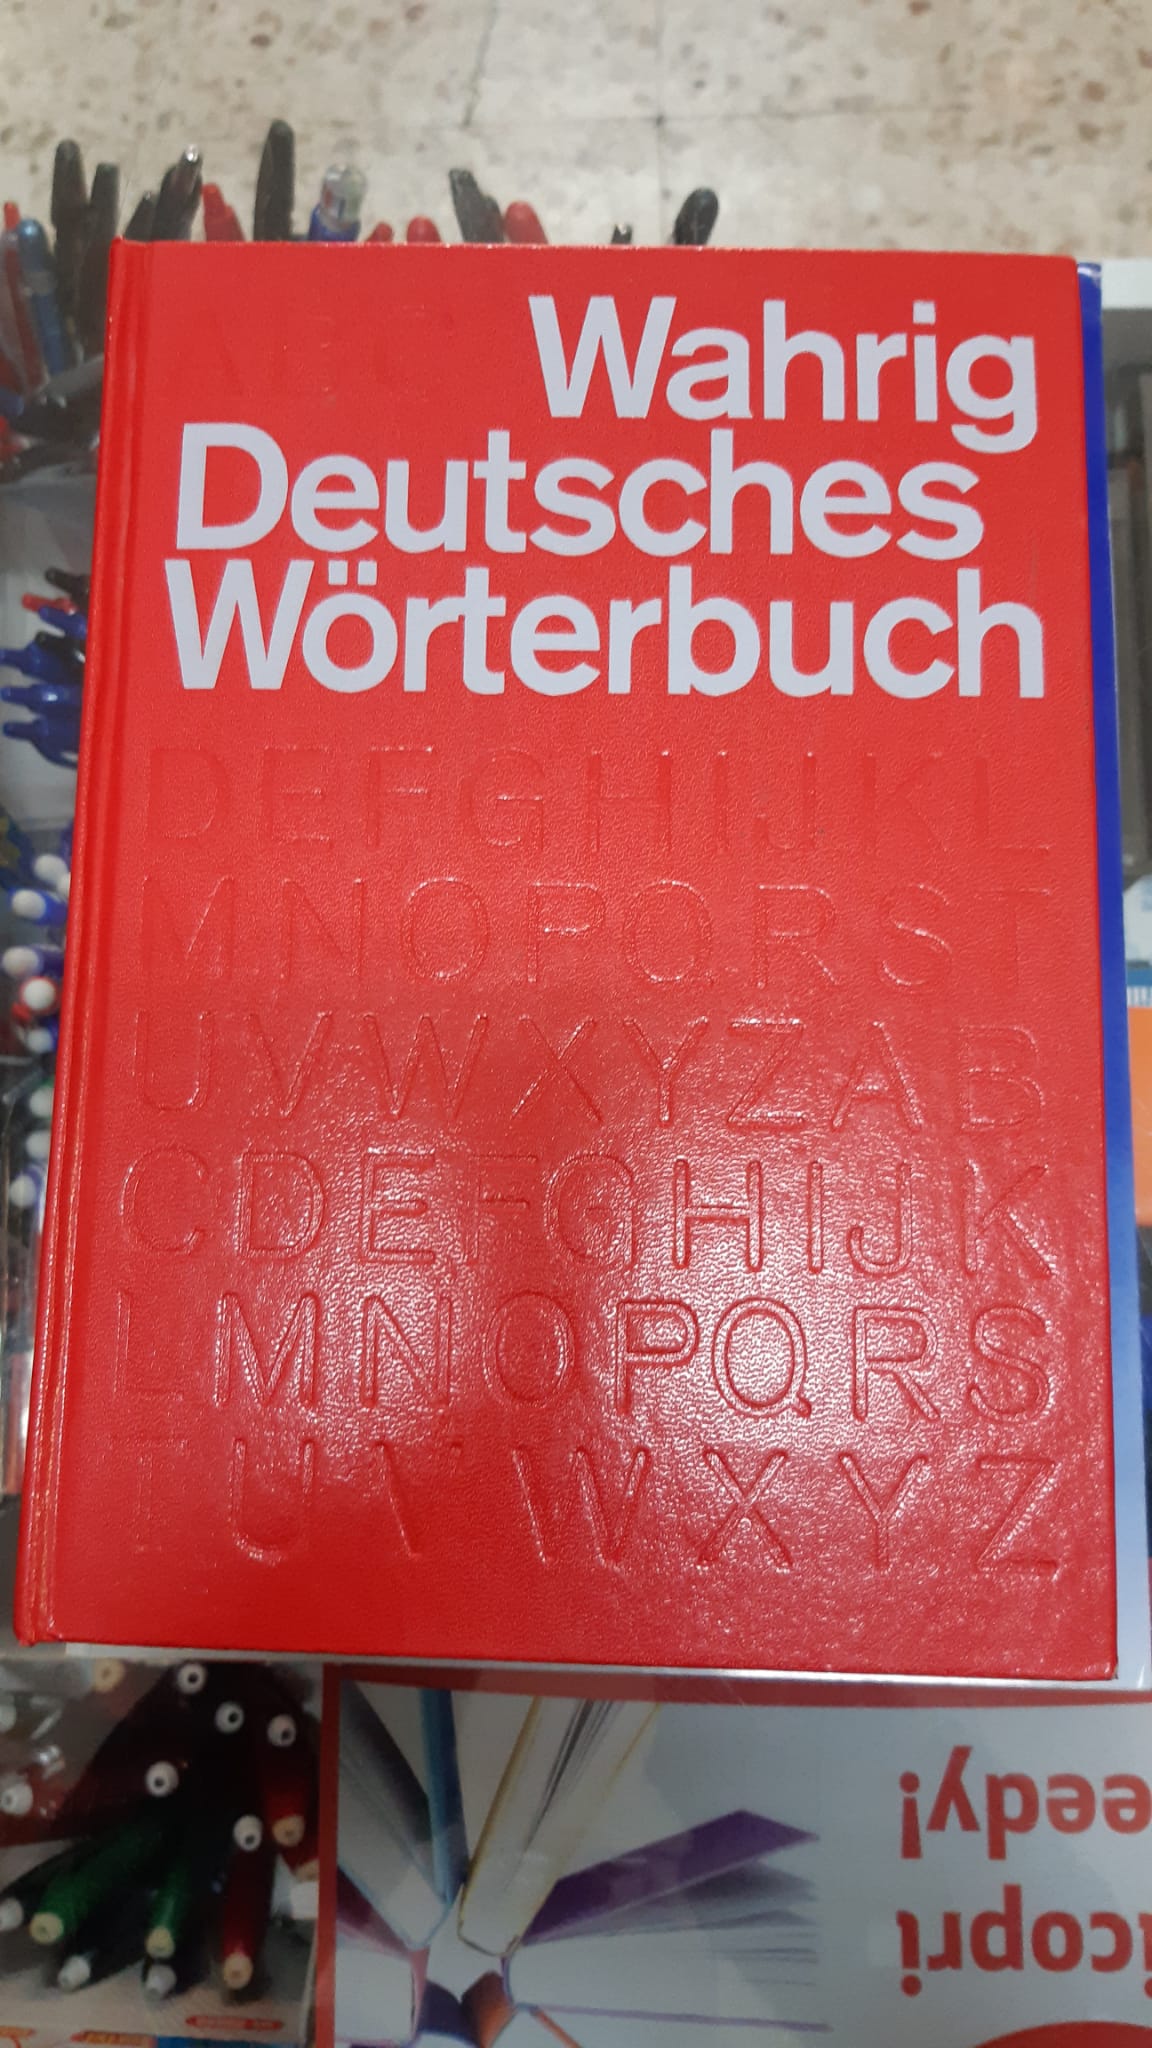 WAHRIG DEUTSCHES WORTERBUCH - WAHRIG GERHARD